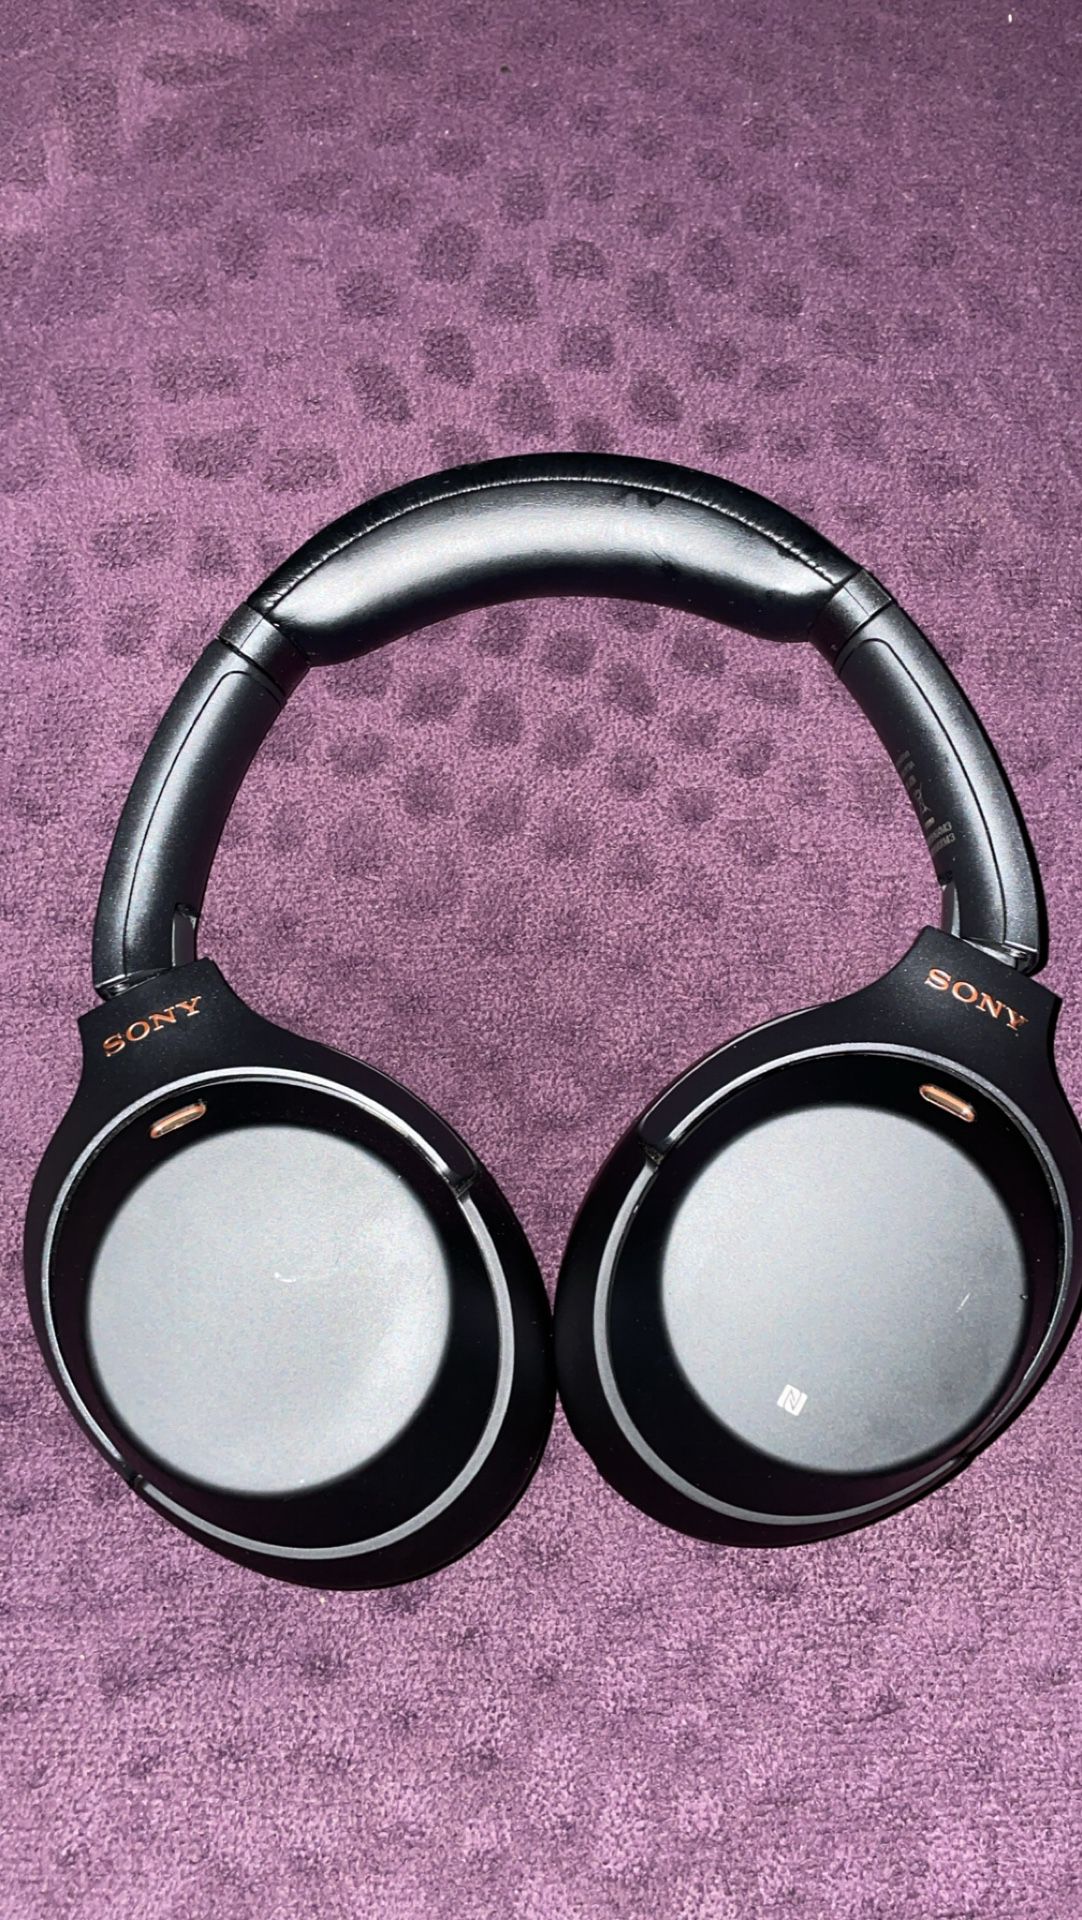 Sony Headphones M3